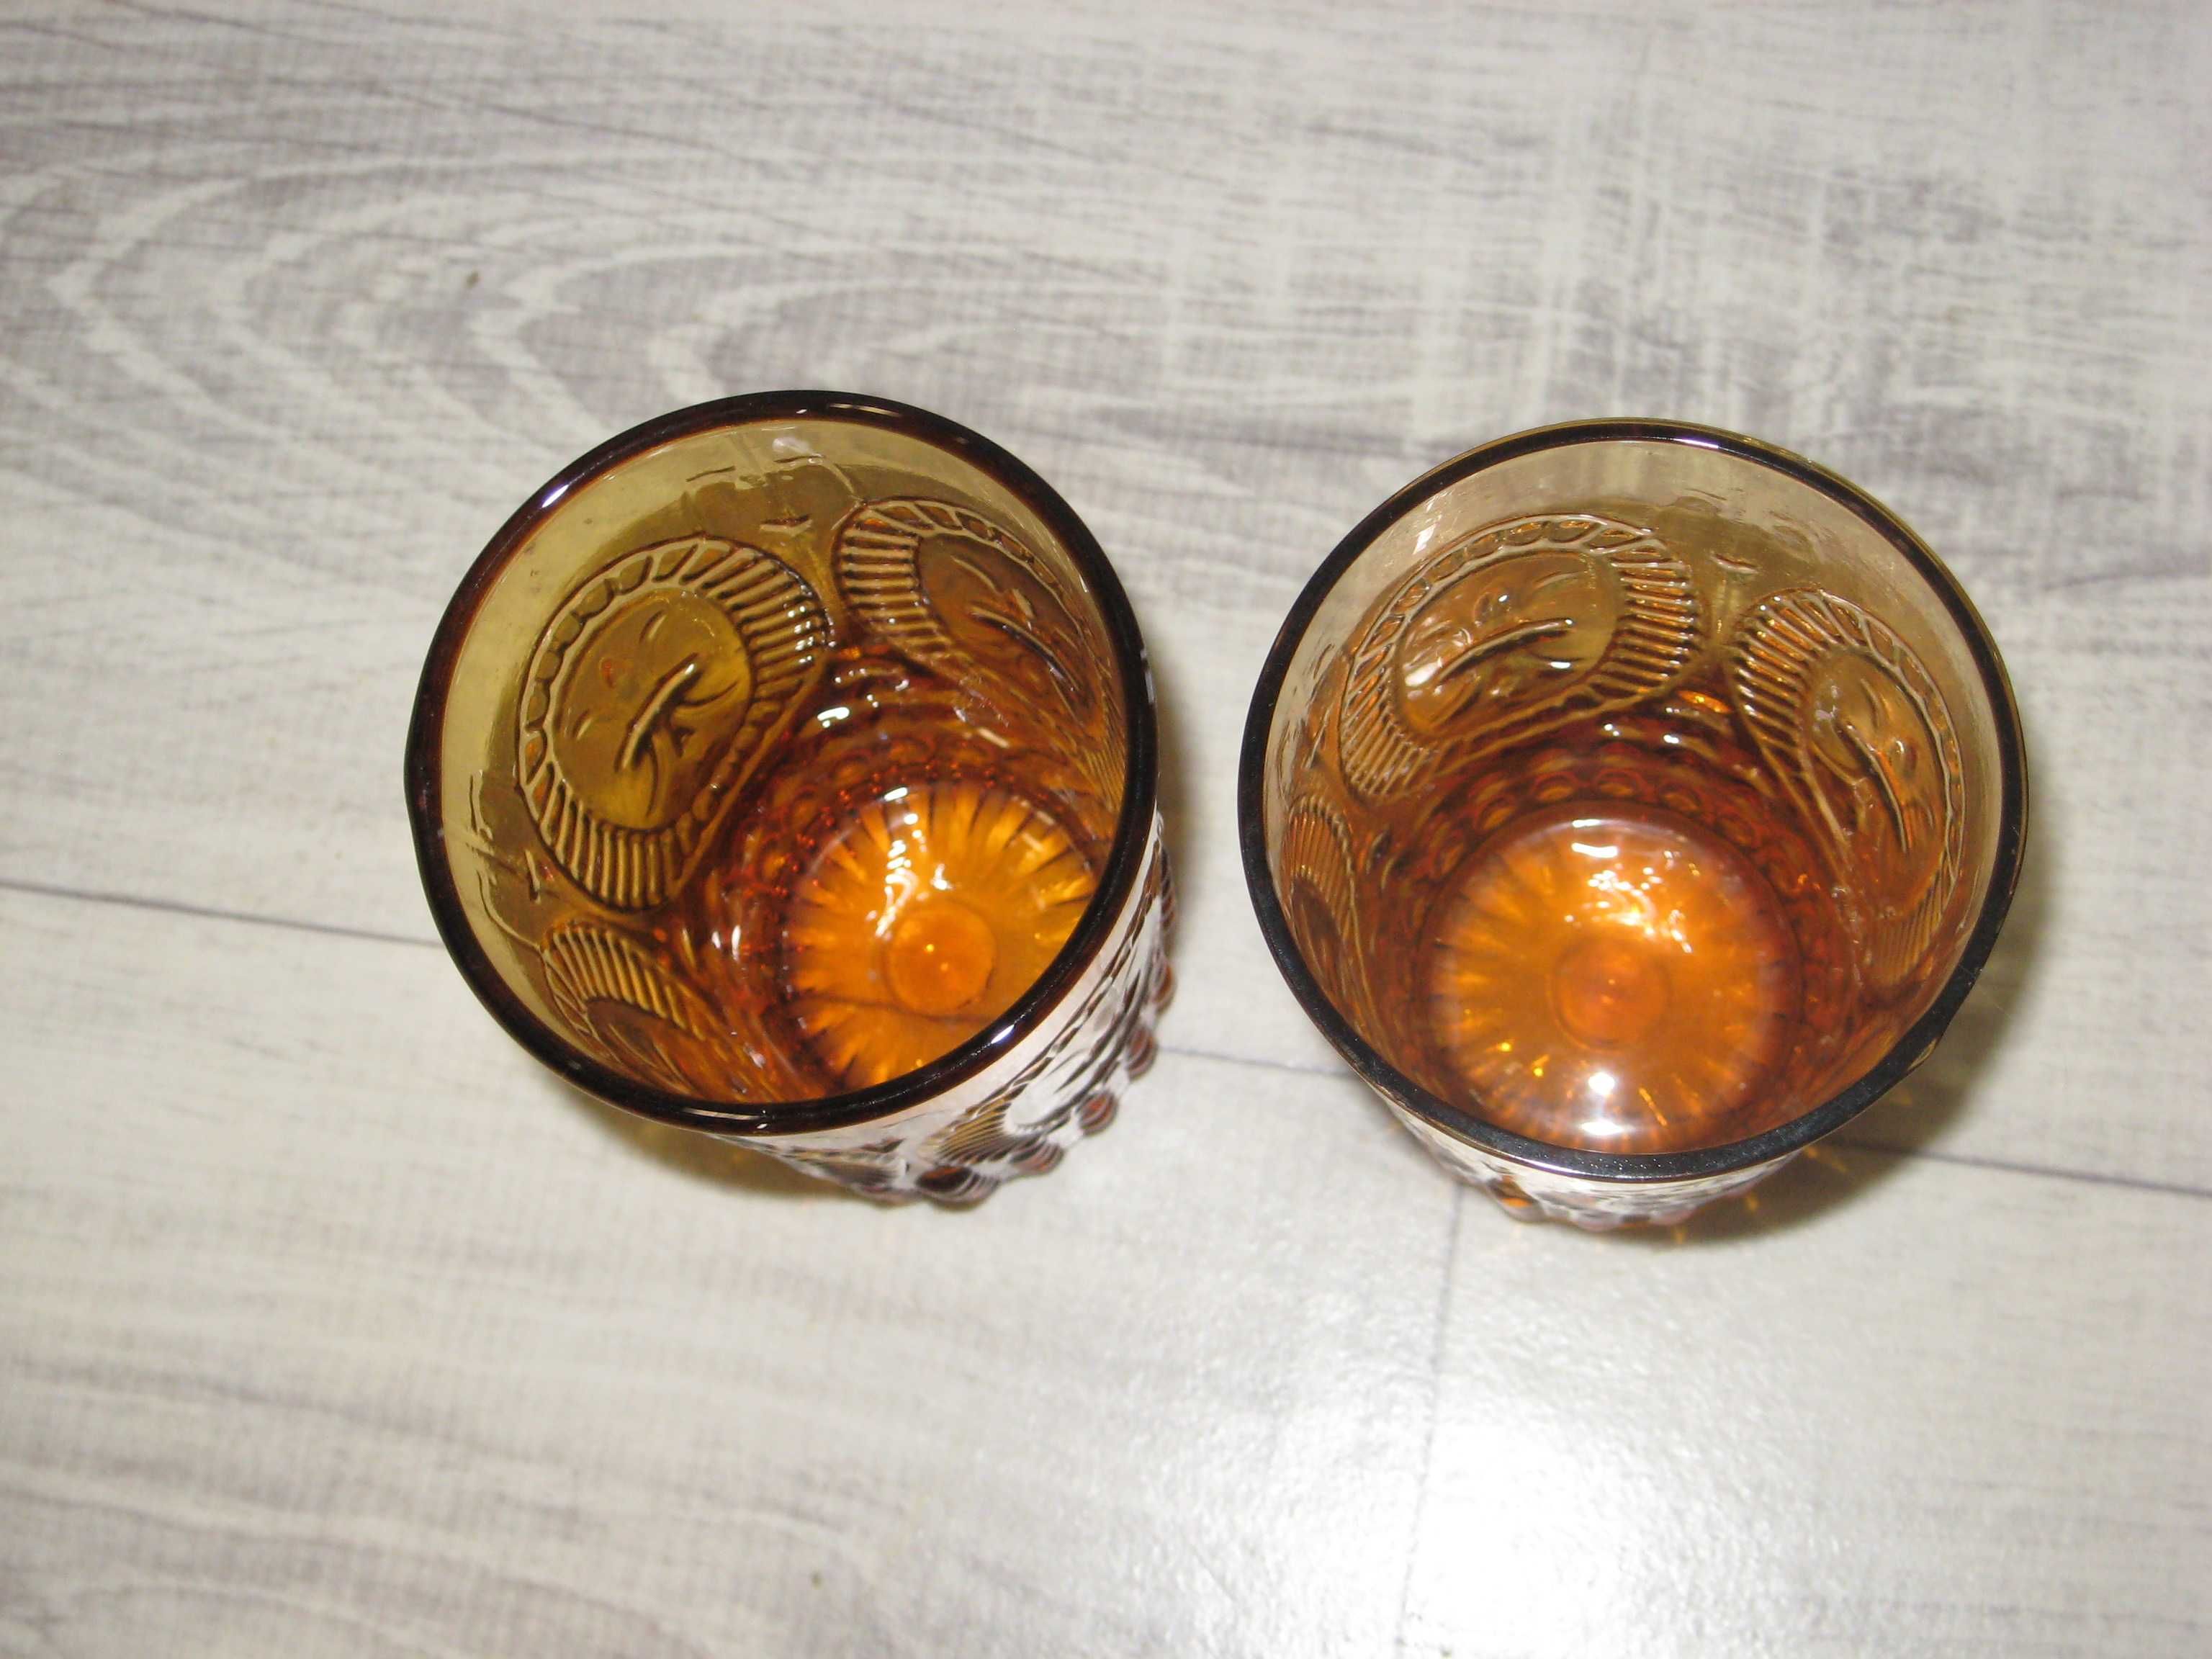 Szklanka szklana dwie sztuki x2 szklanki retro vintage pomarańczowe